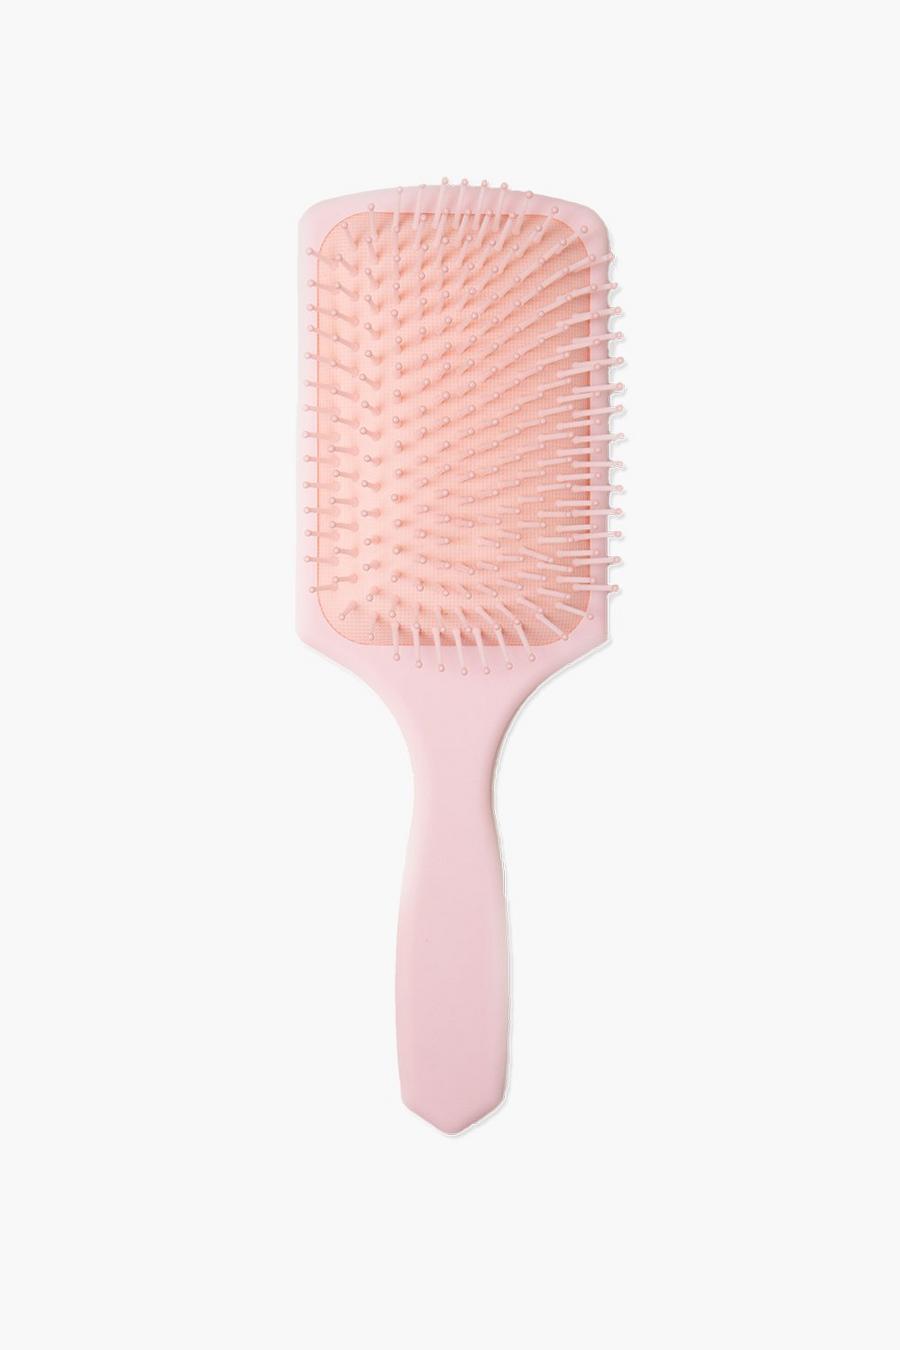 Cepillo rectangular para el pelo de Lullabellz, Pink rosa